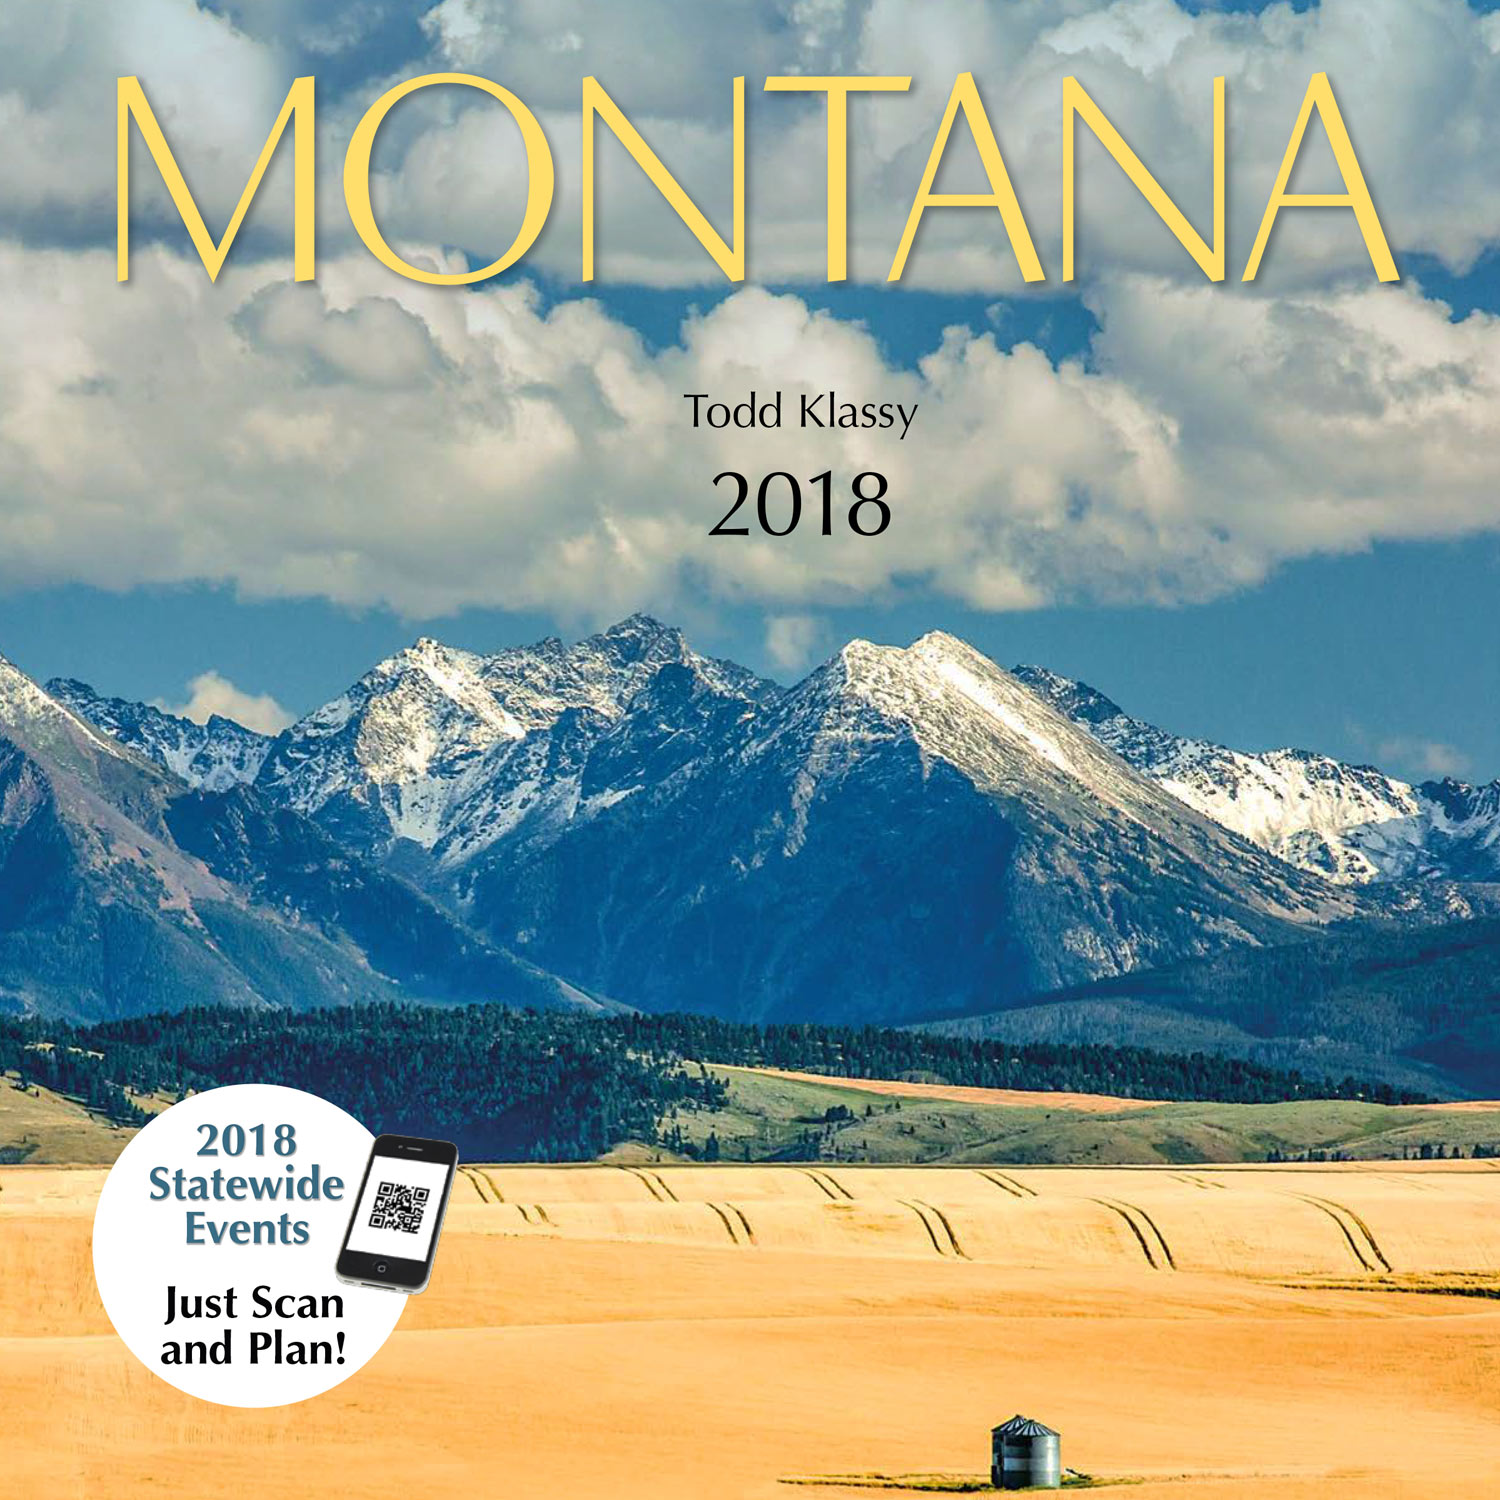 New 2018 Montana calendar and 2018 Wisconsin calendar covers revealed